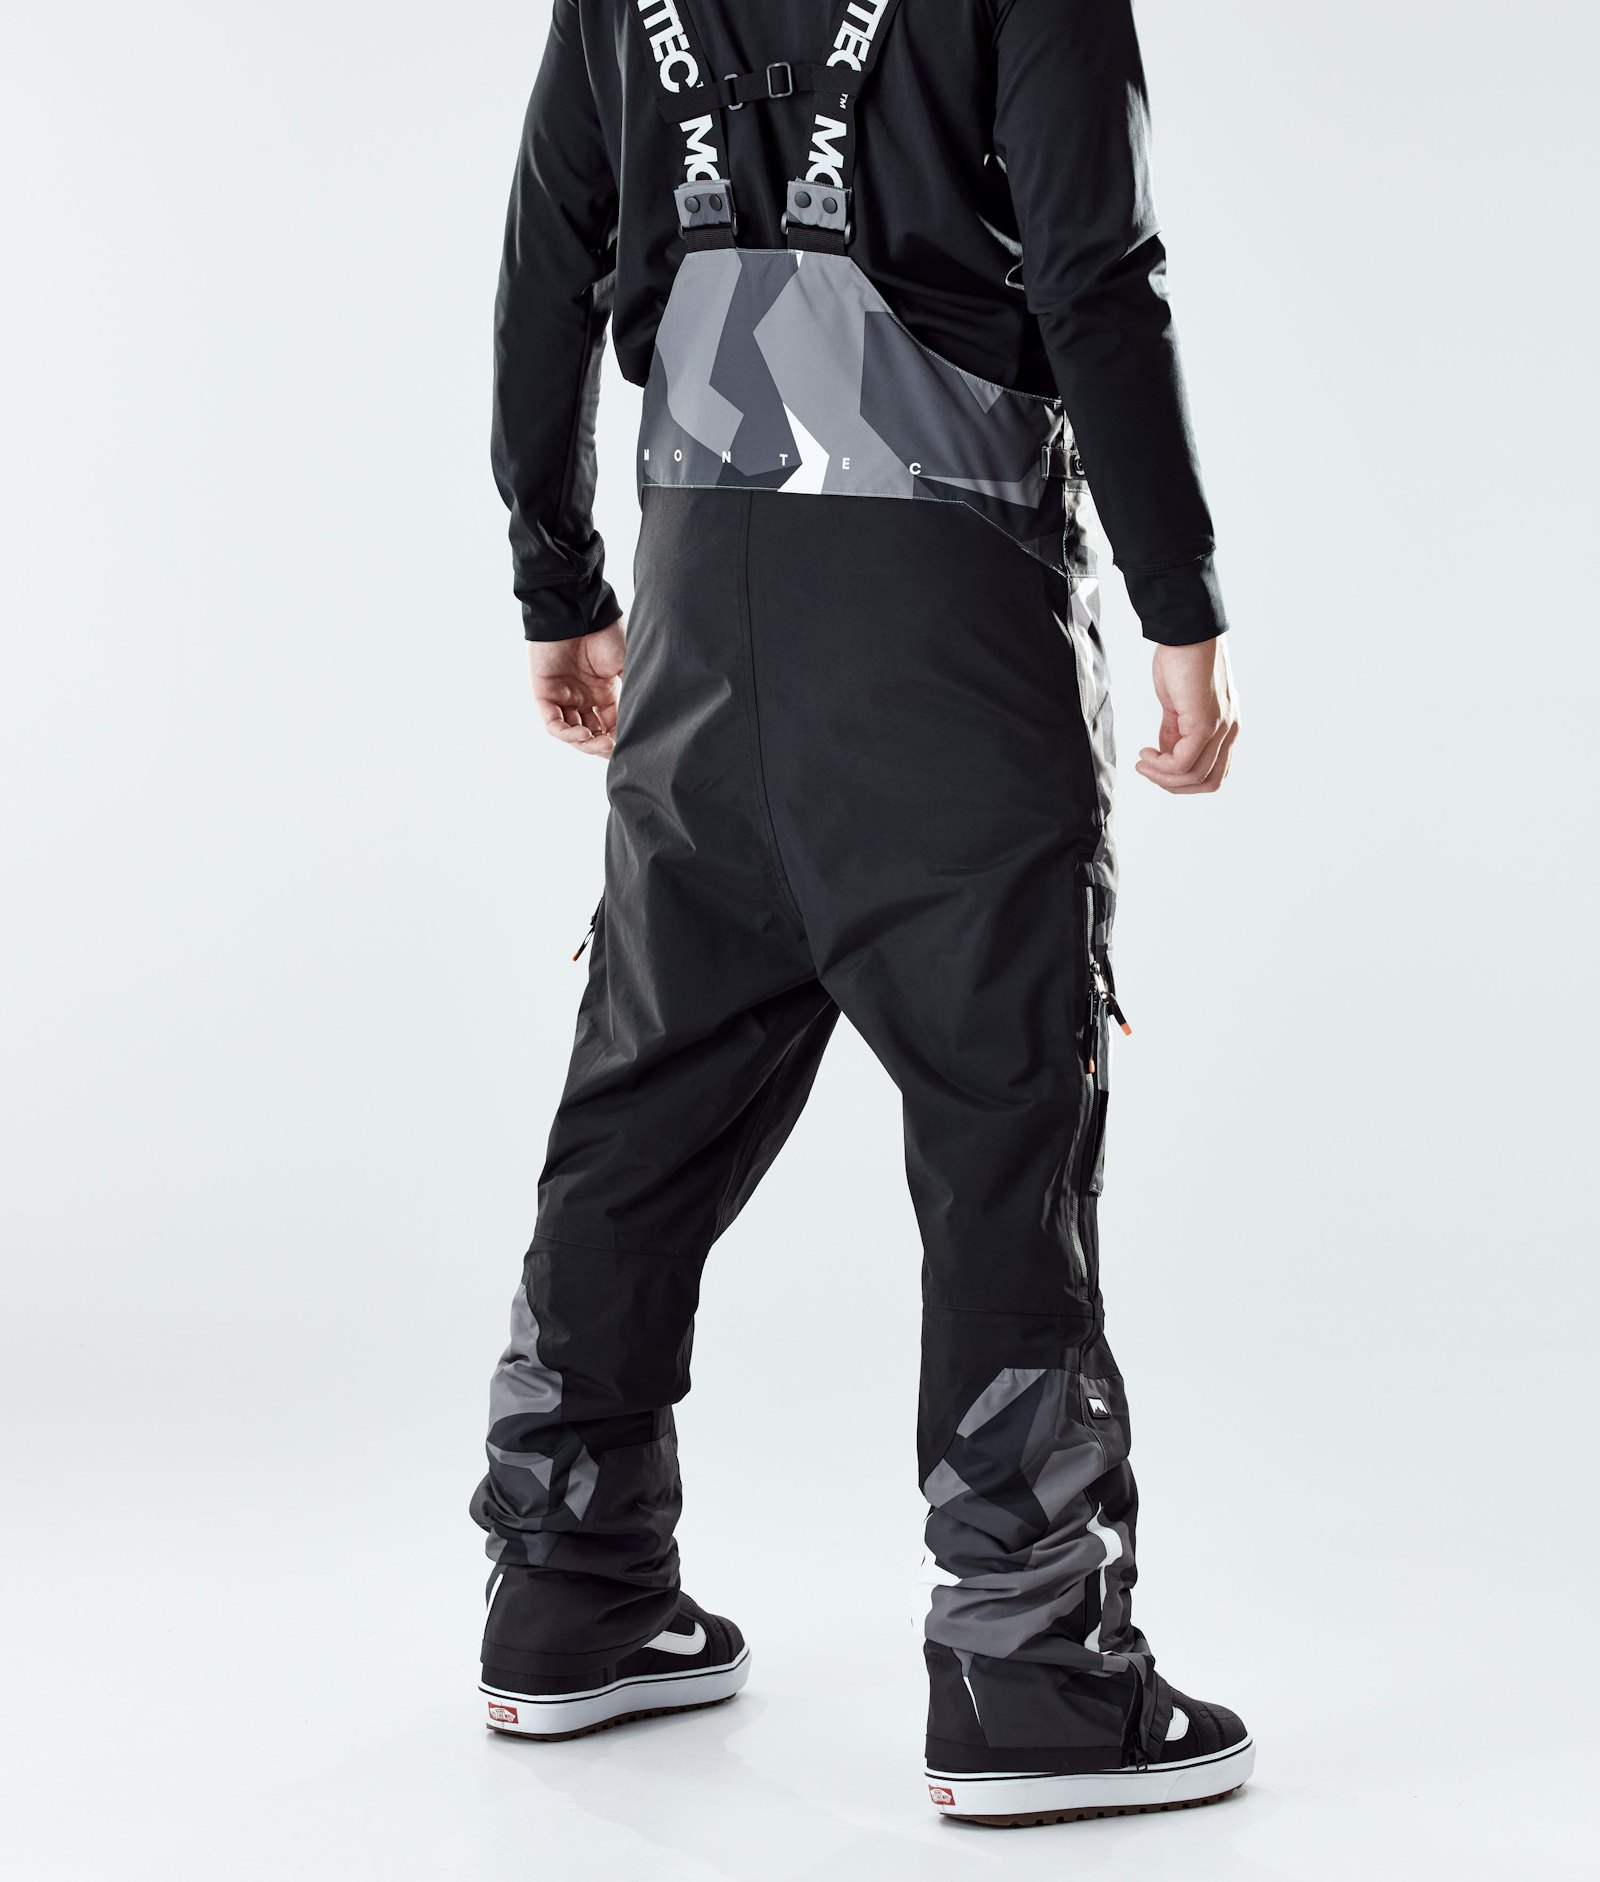 Fawk 2020 Spodnie Snowboardowe Mężczyźni Arctic Camo/Black, Zdjęcie 3 z 6